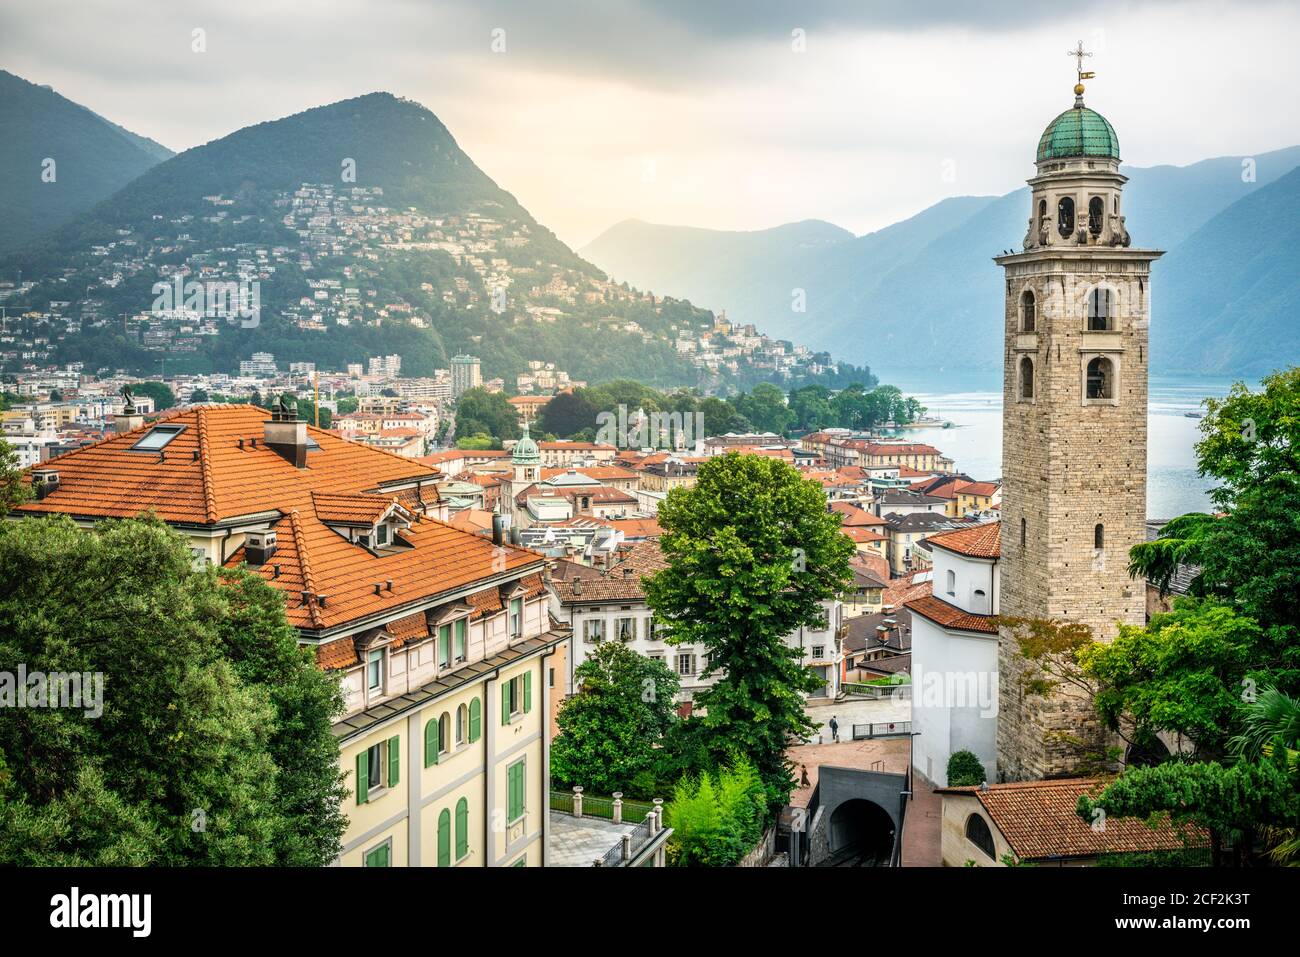 Landschaftlich reizvolle Stadtansicht von Lugano mit der Kathedrale von St. Lawrence Glocke Blick auf den Turm und den See und dramatisches Licht in Lugano Tessin Schweiz Stockfoto